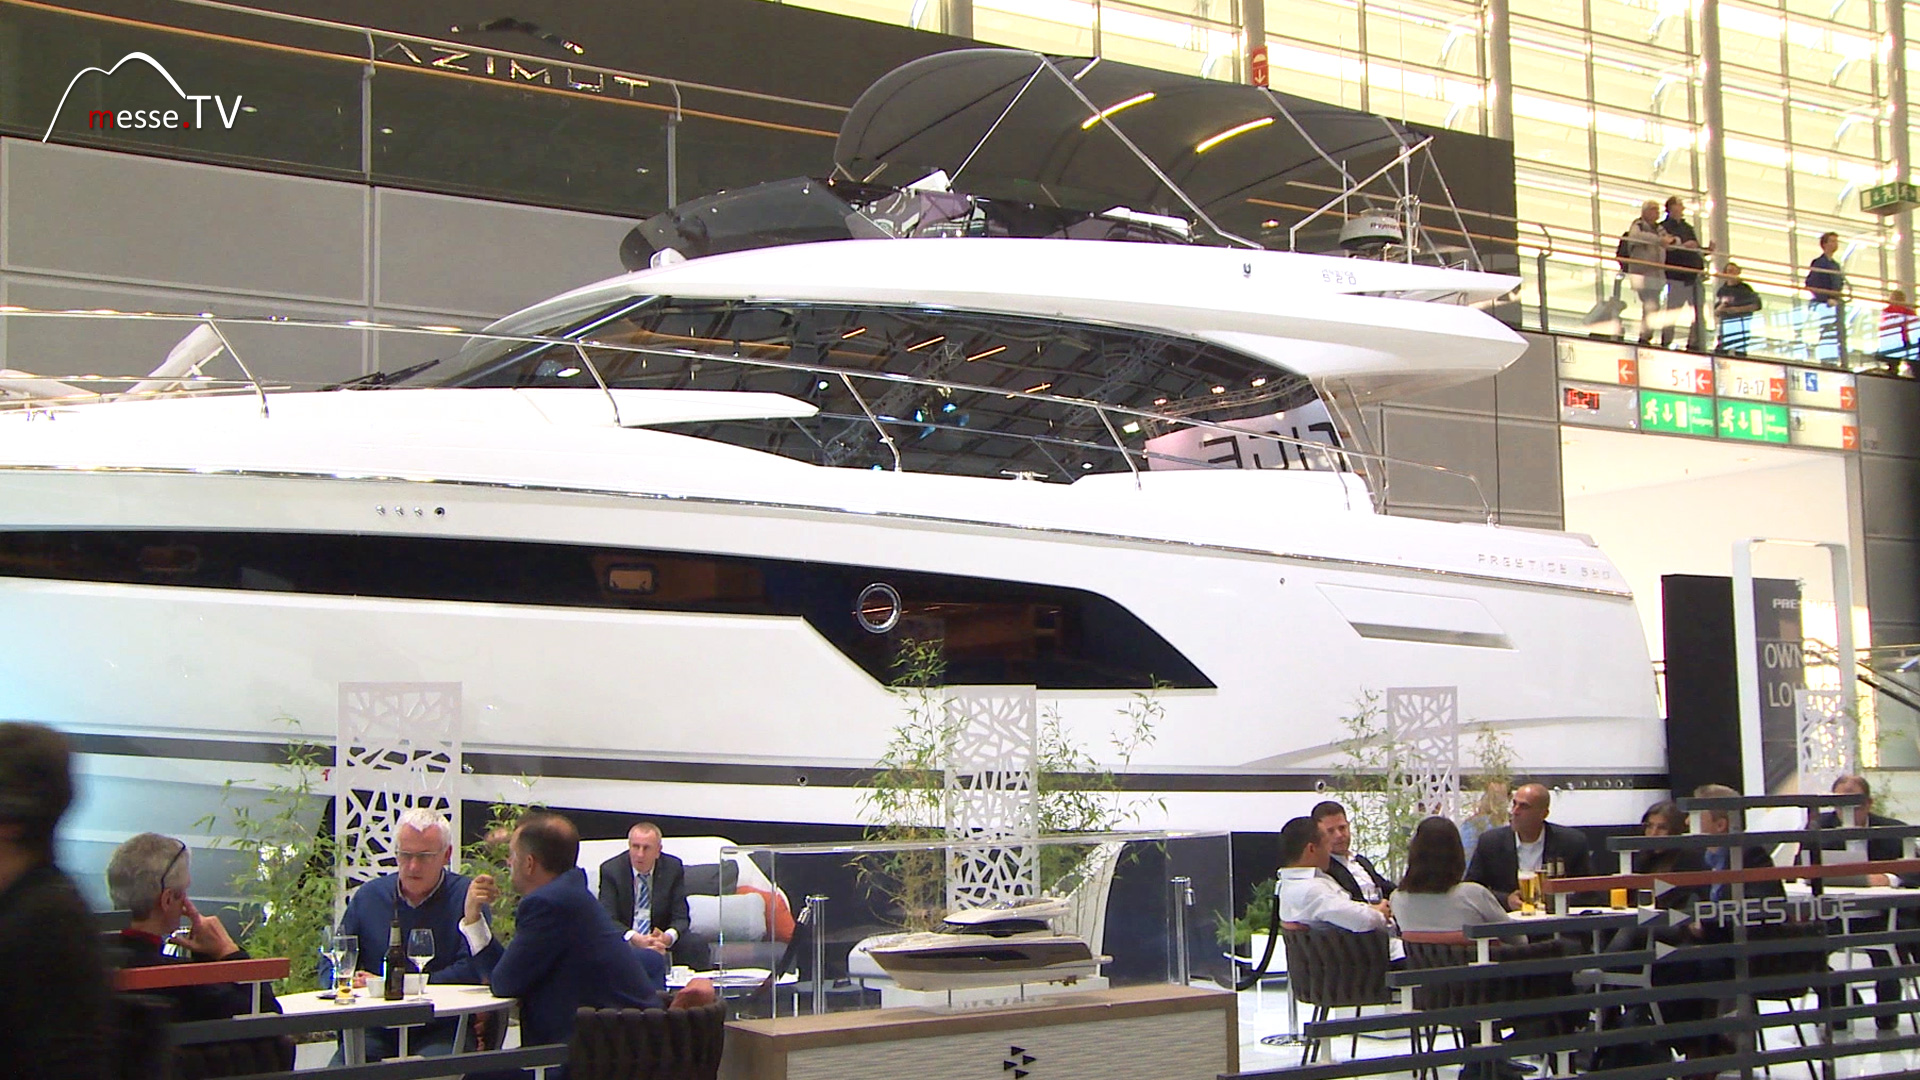 motor yacht Prestige520 boat 2020 Dusseldorf